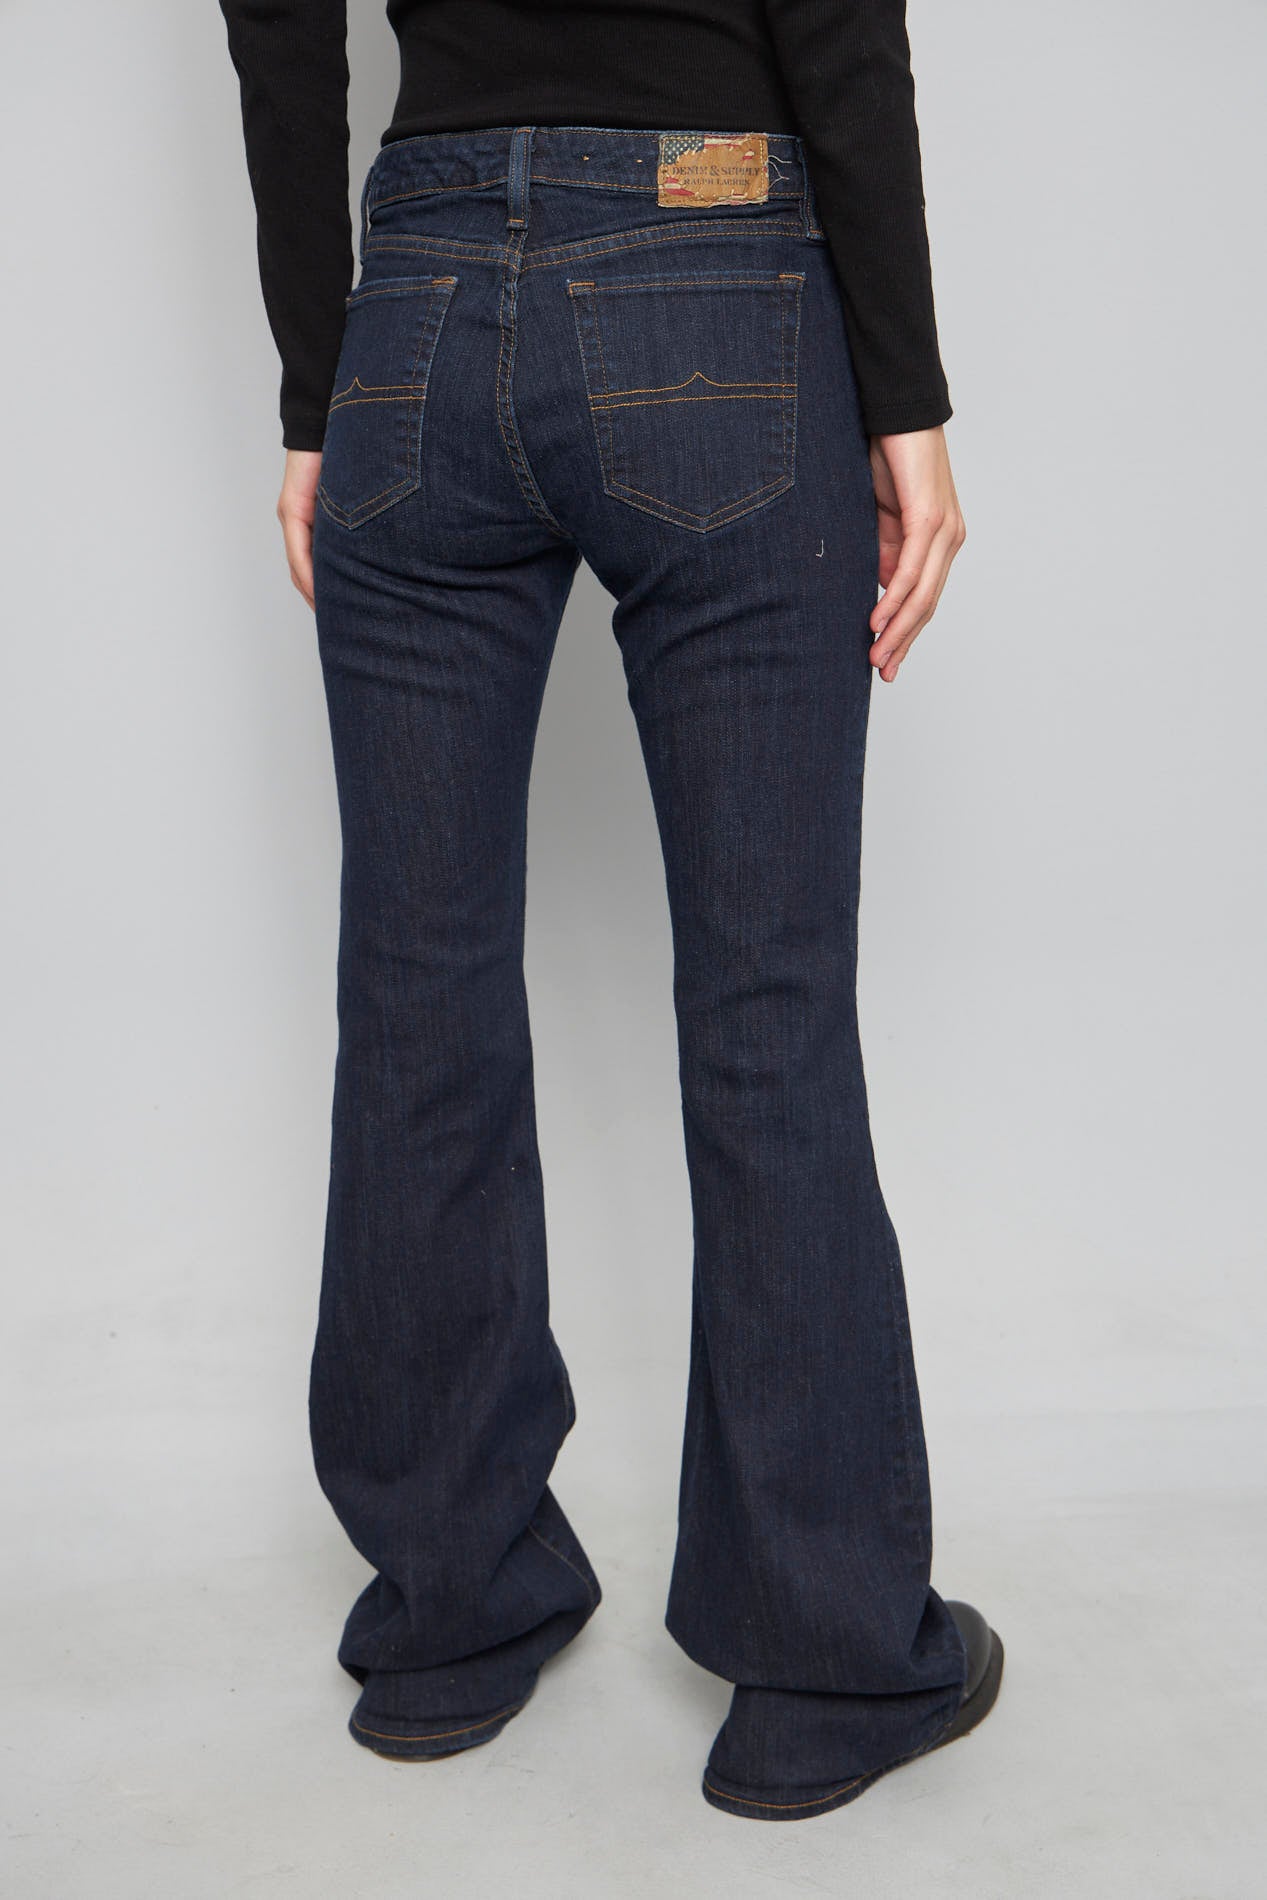 Jeans casual  azul ralph lauren talla 38 863